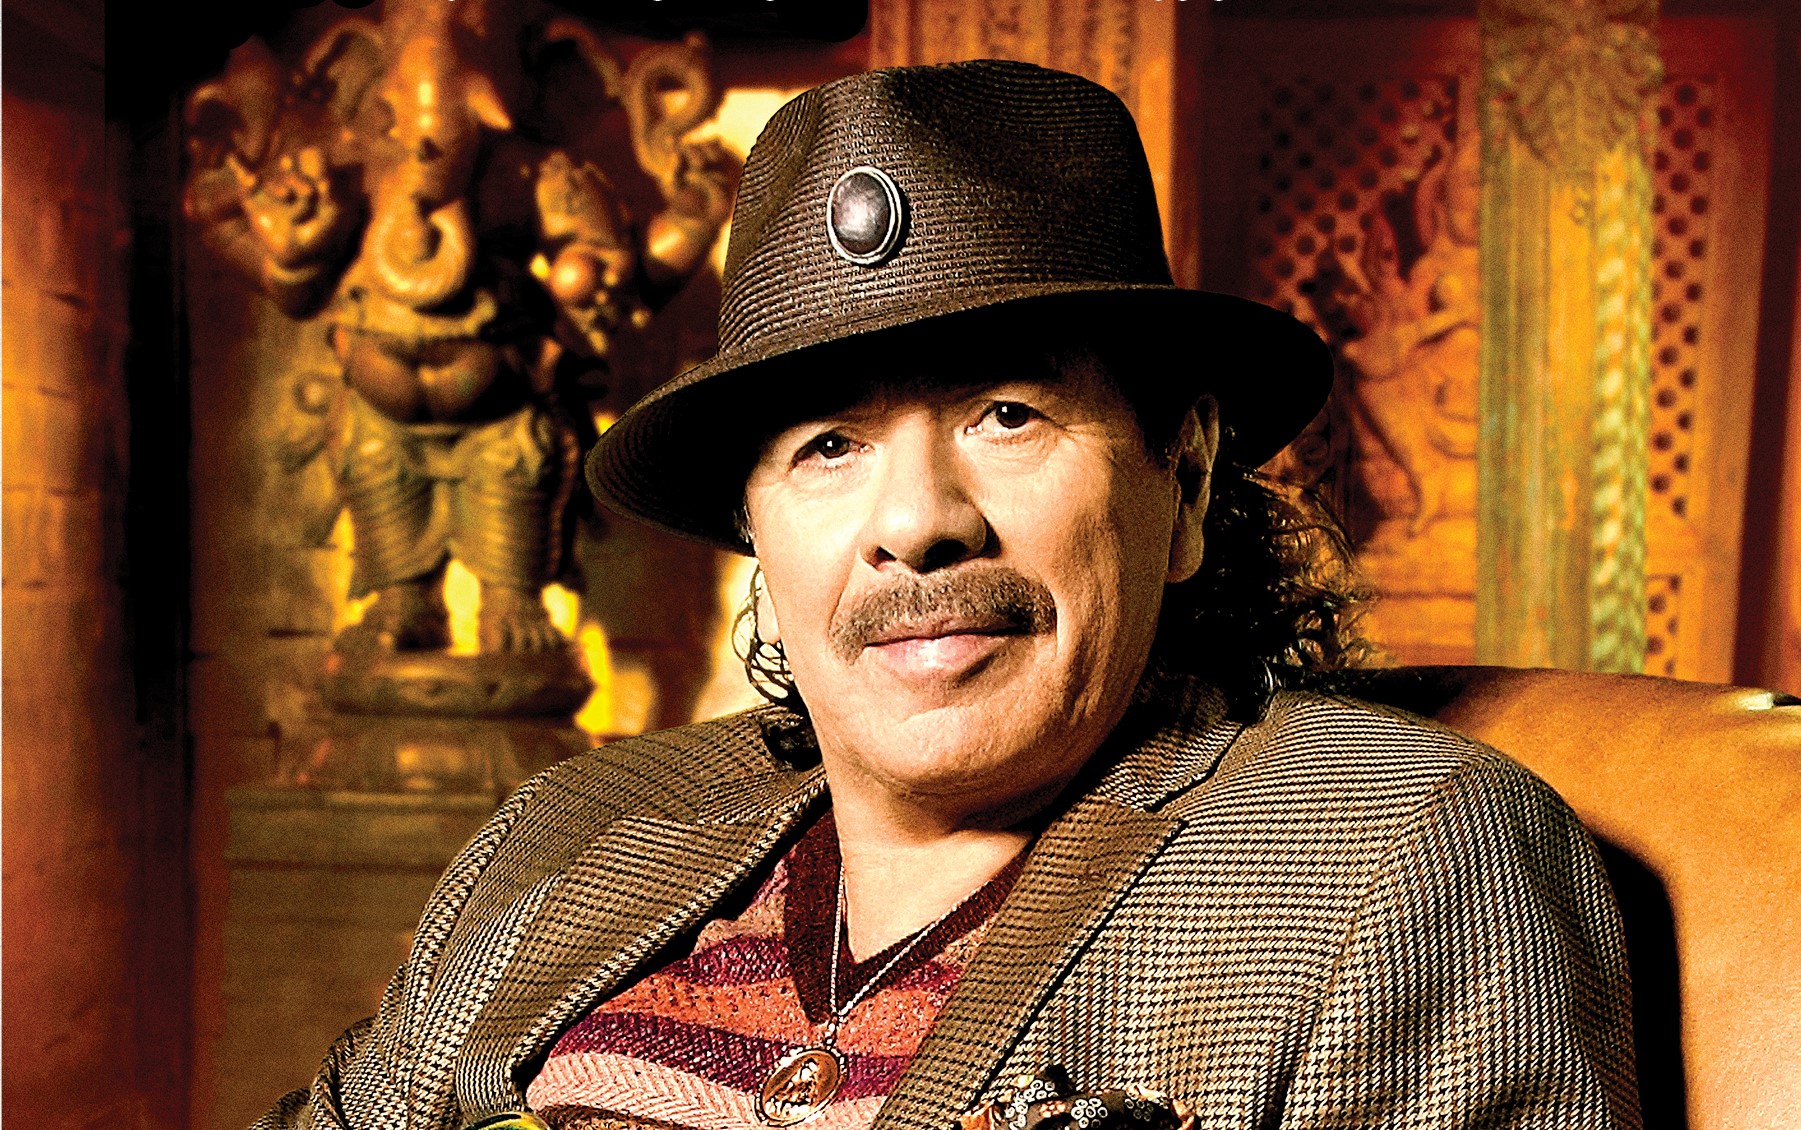 Al cinema "Carlos. Il viaggio di Santana". Anteprima mondiale anche in Italia